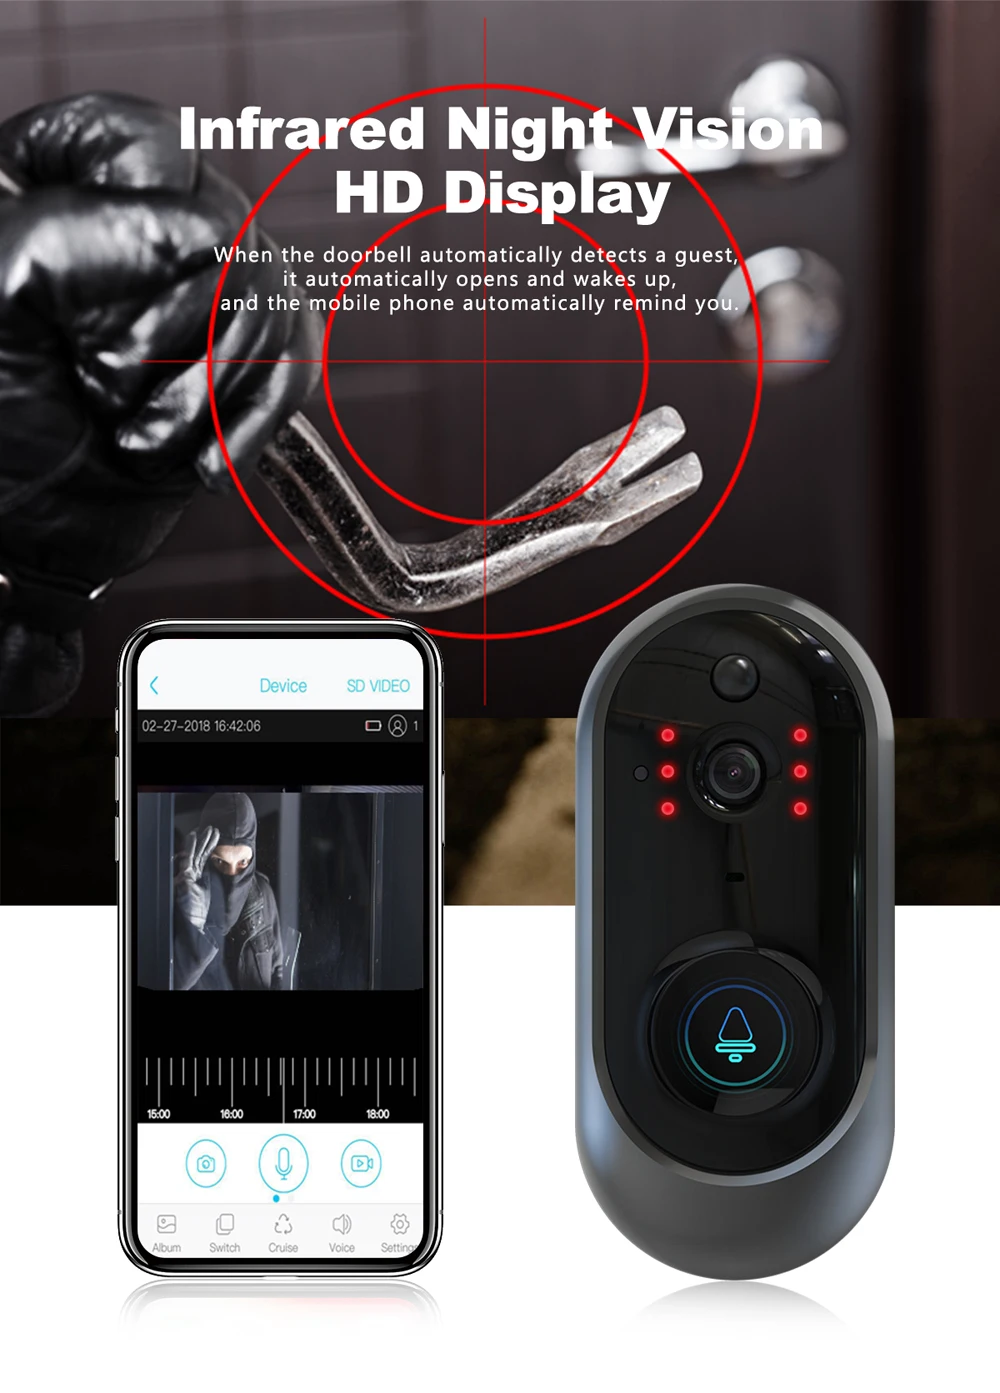 Умный Wifi дверной звонок с камерой кольцо видео дверной звонок 720P домофон для квартиры ИК сигнализация Беспроводная камера дверной звонок